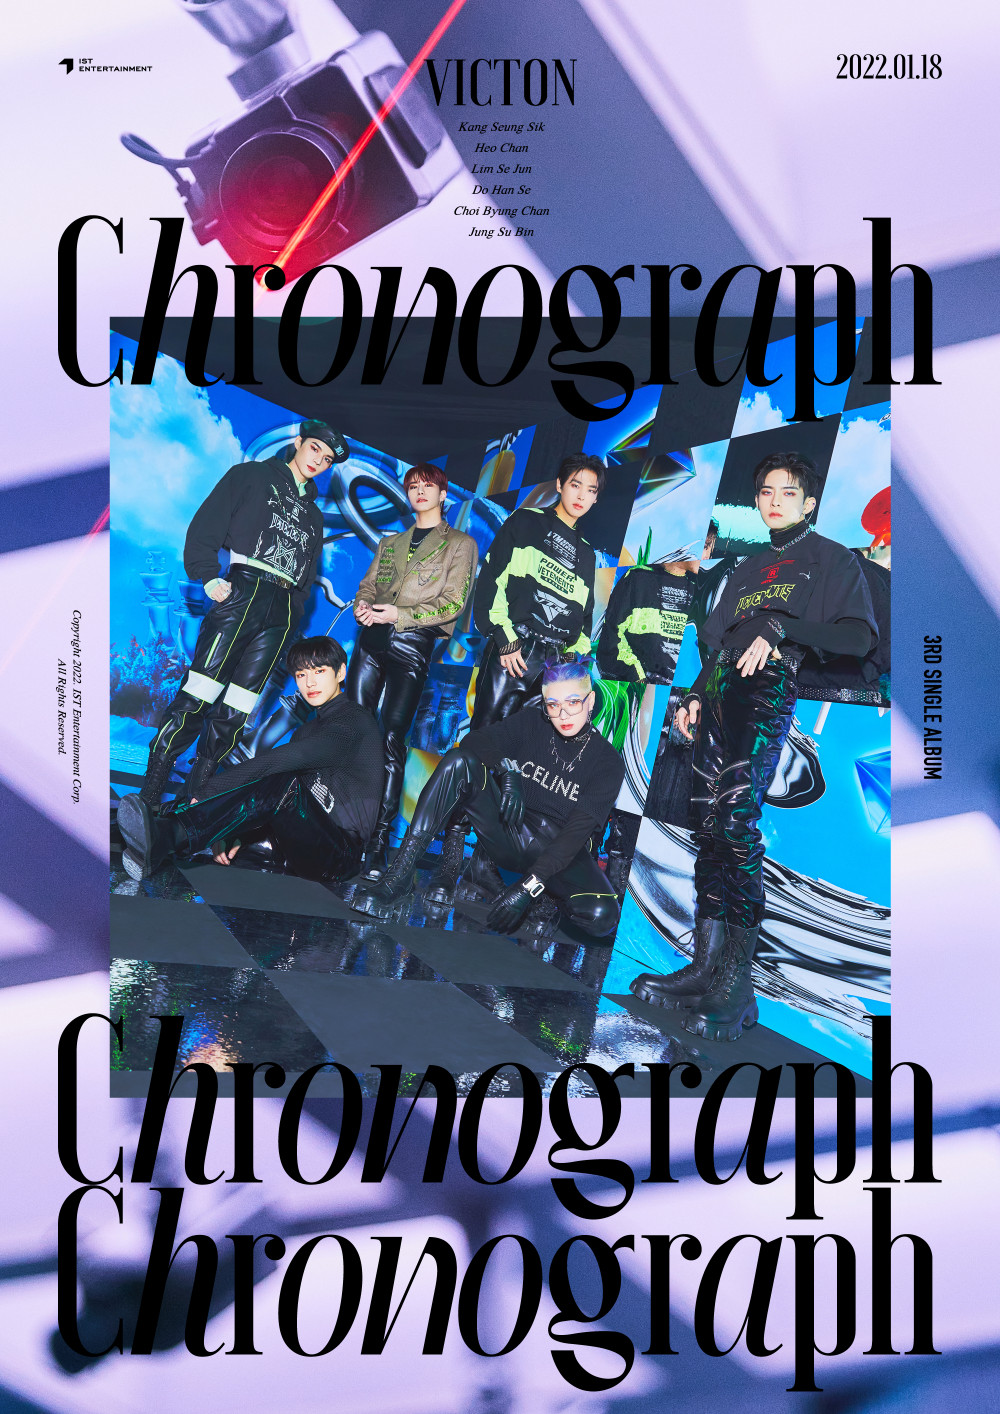 [Камбэк] VICTON альбом «Chronograph»: музыкальный клип